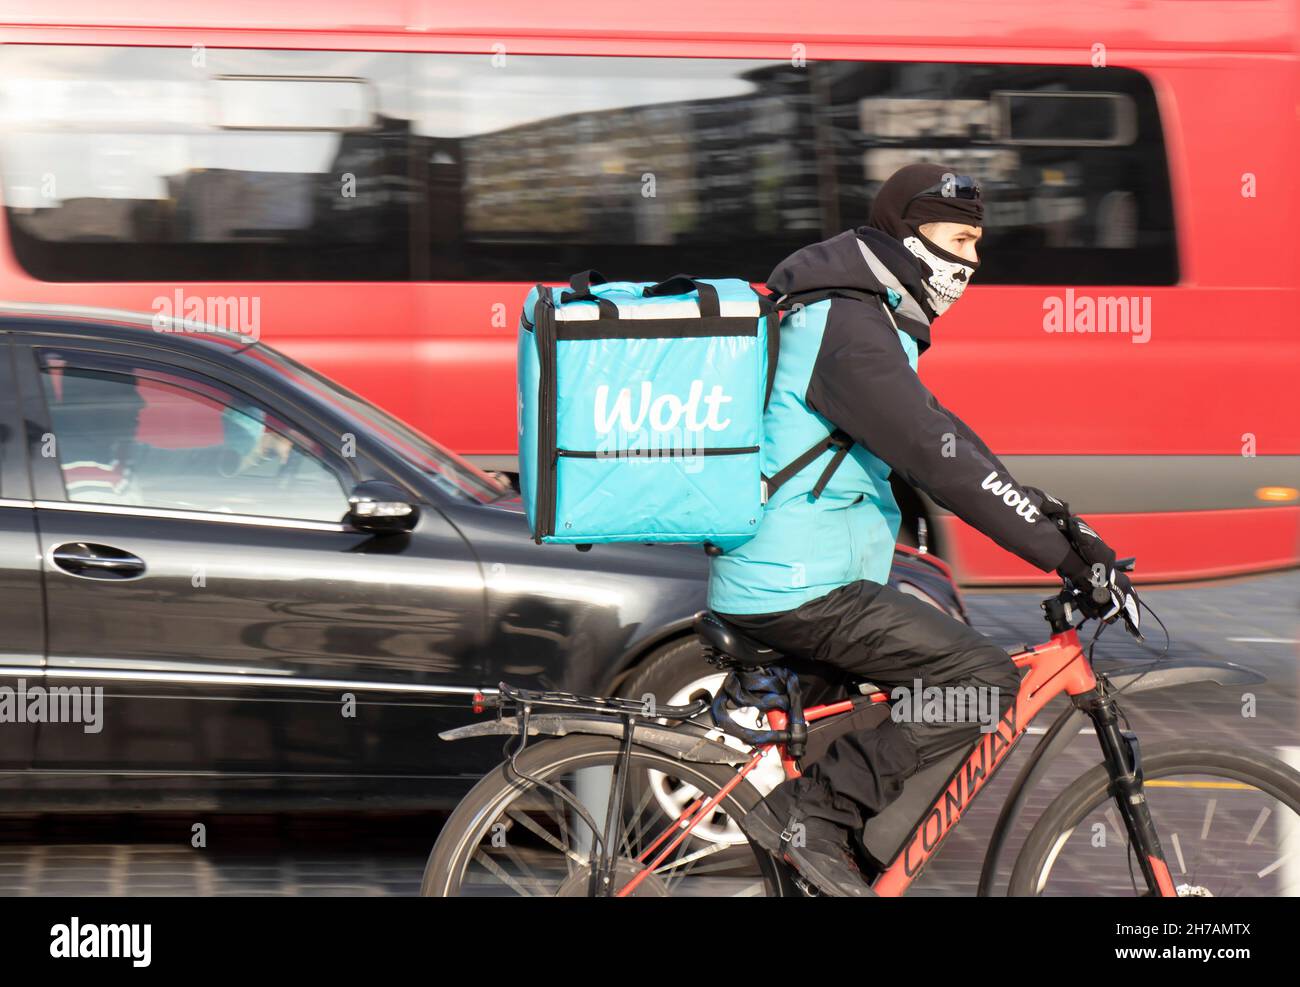 Belgrado, Serbia - 17 de noviembre de 2021: Un joven que trabaja para el servicio de entrega de alimentos de la ciudad de Wolt en bicicleta por la ajetreada calle de la ciudad Foto de stock